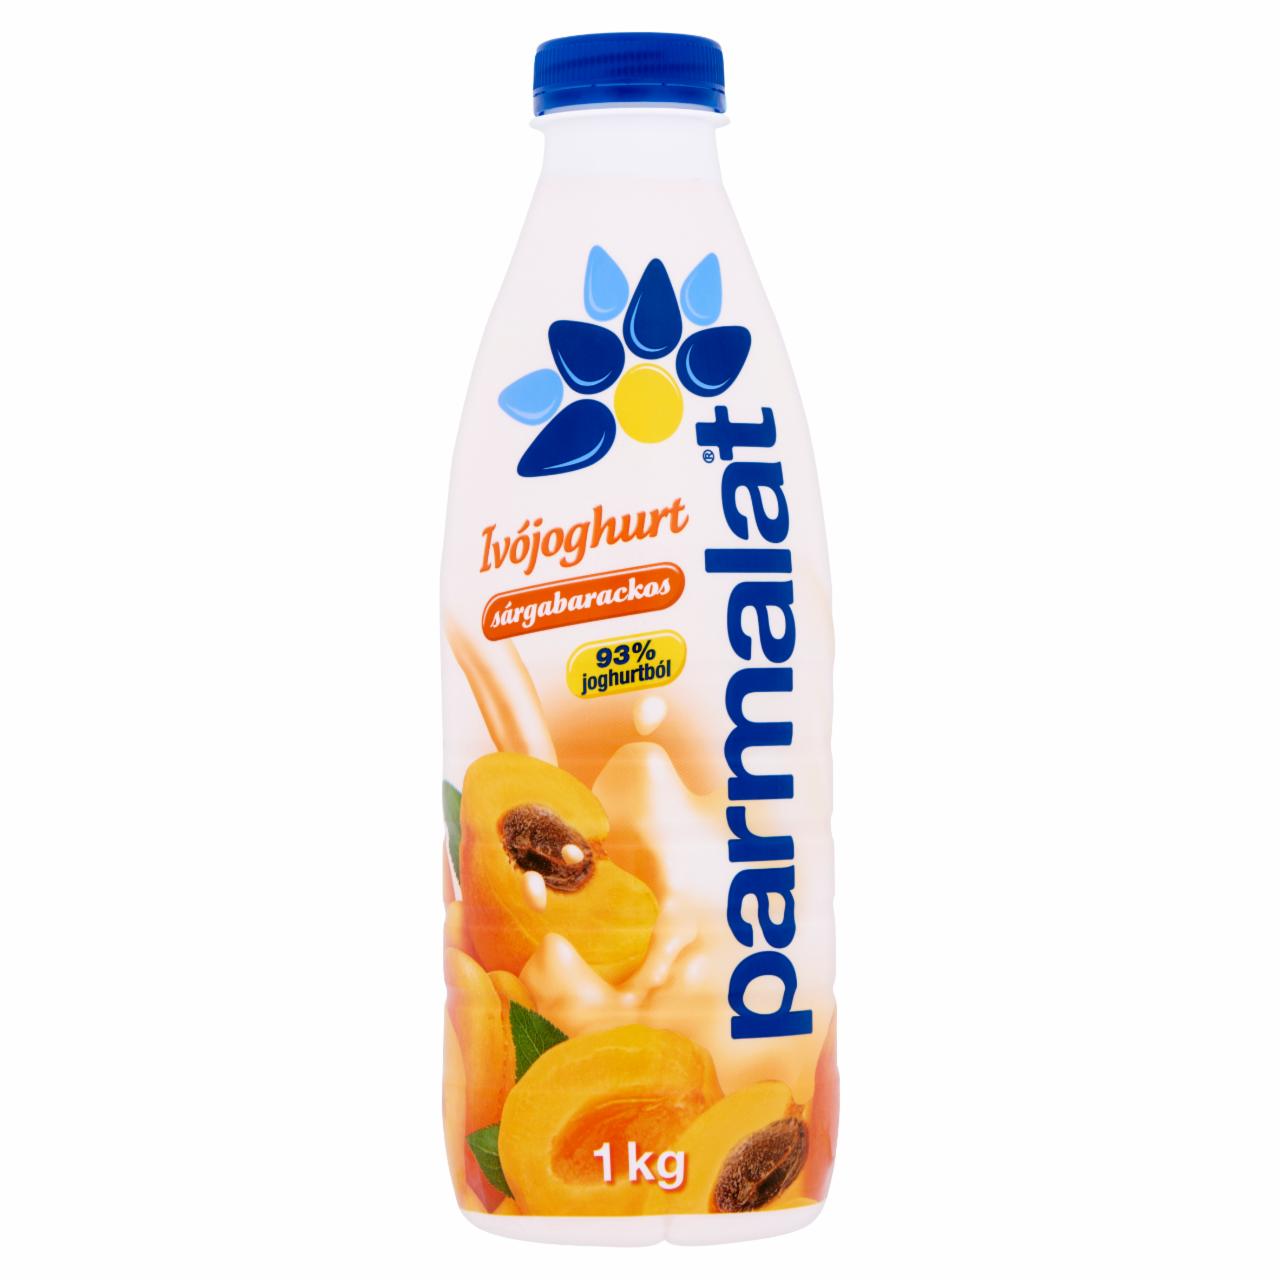 Képek - Parmalat sárgabarackos ivójoghurt 1 kg